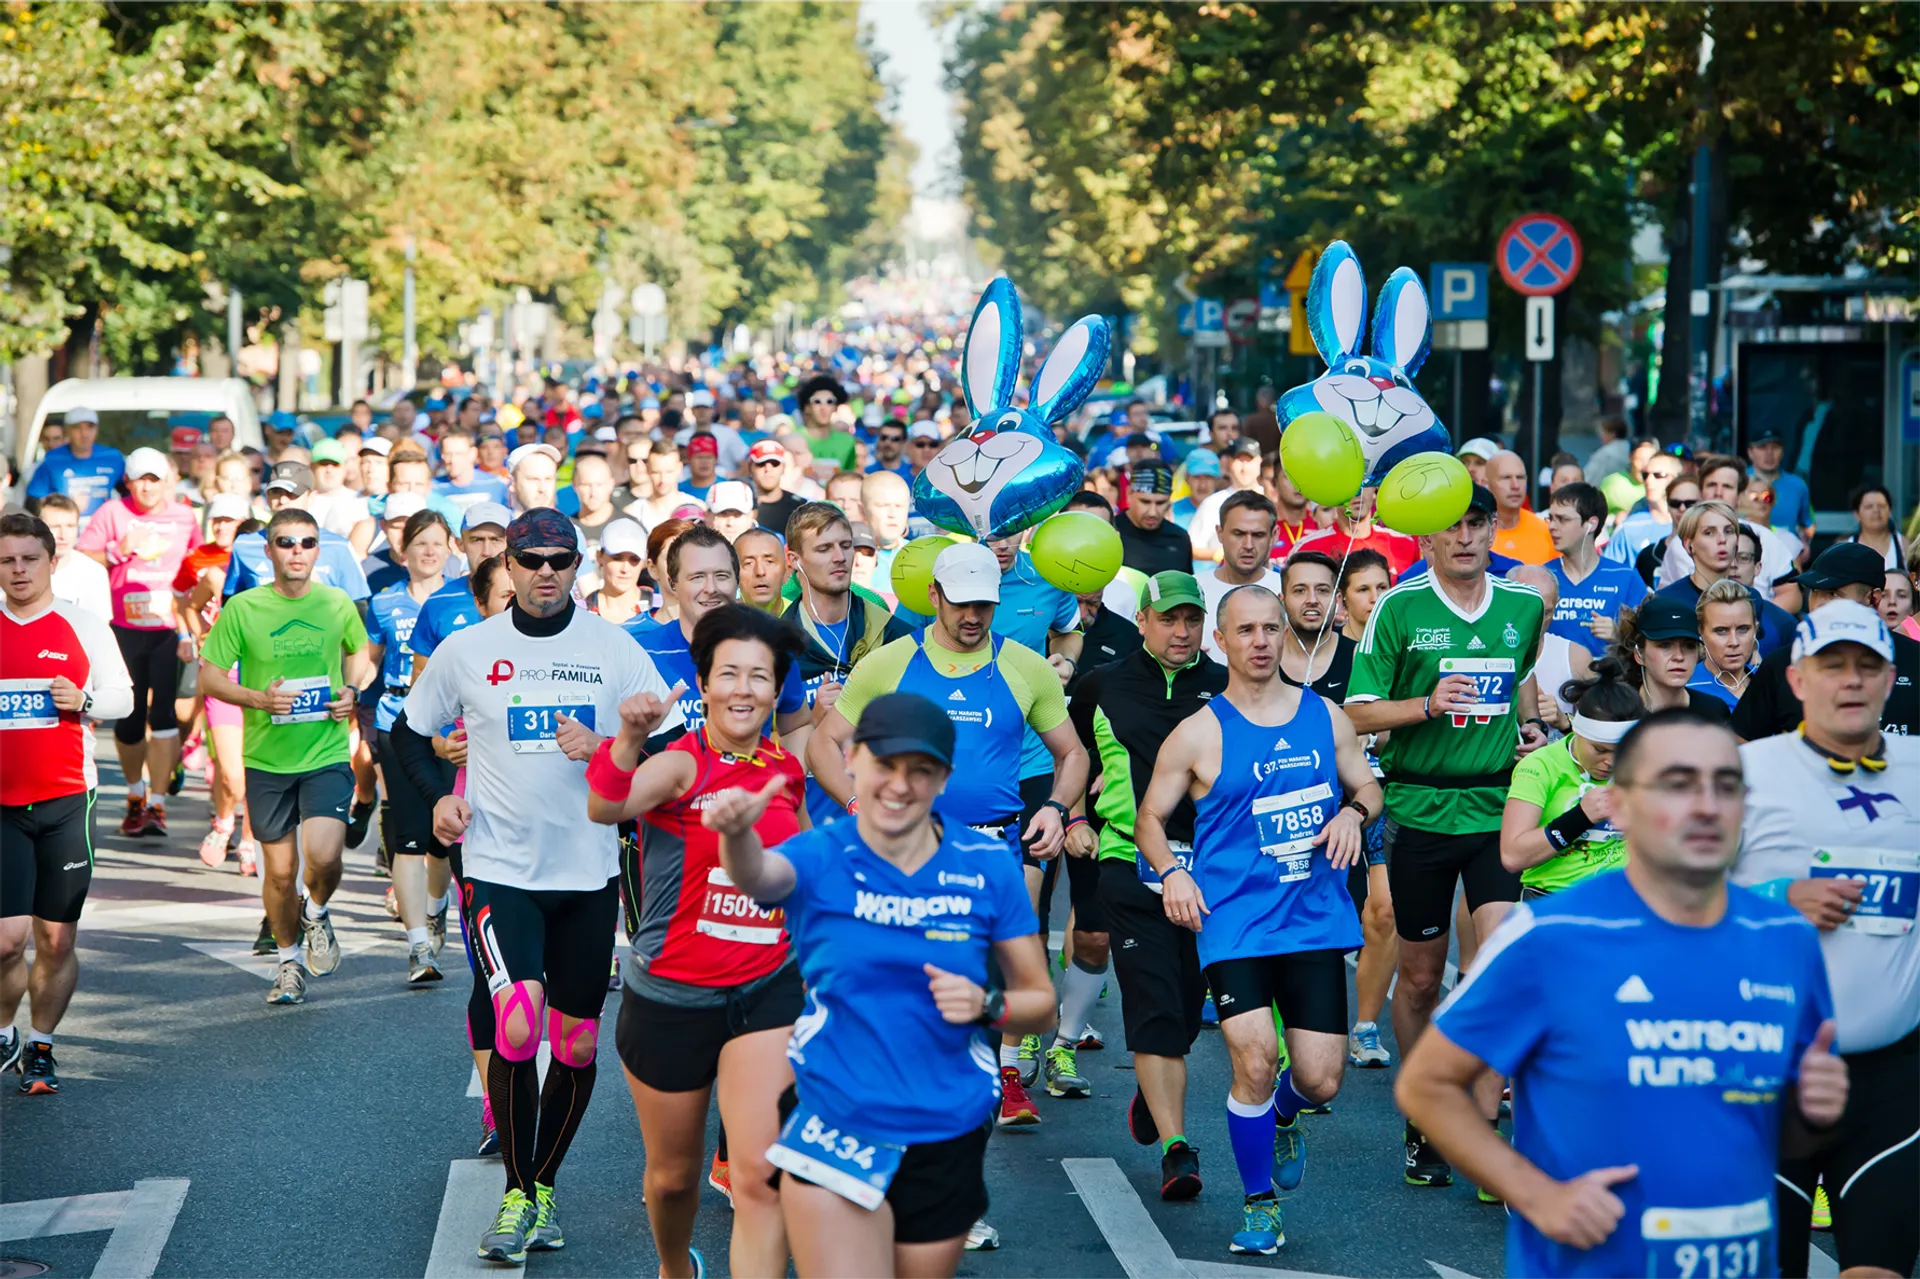 PZU Warsaw Marathon